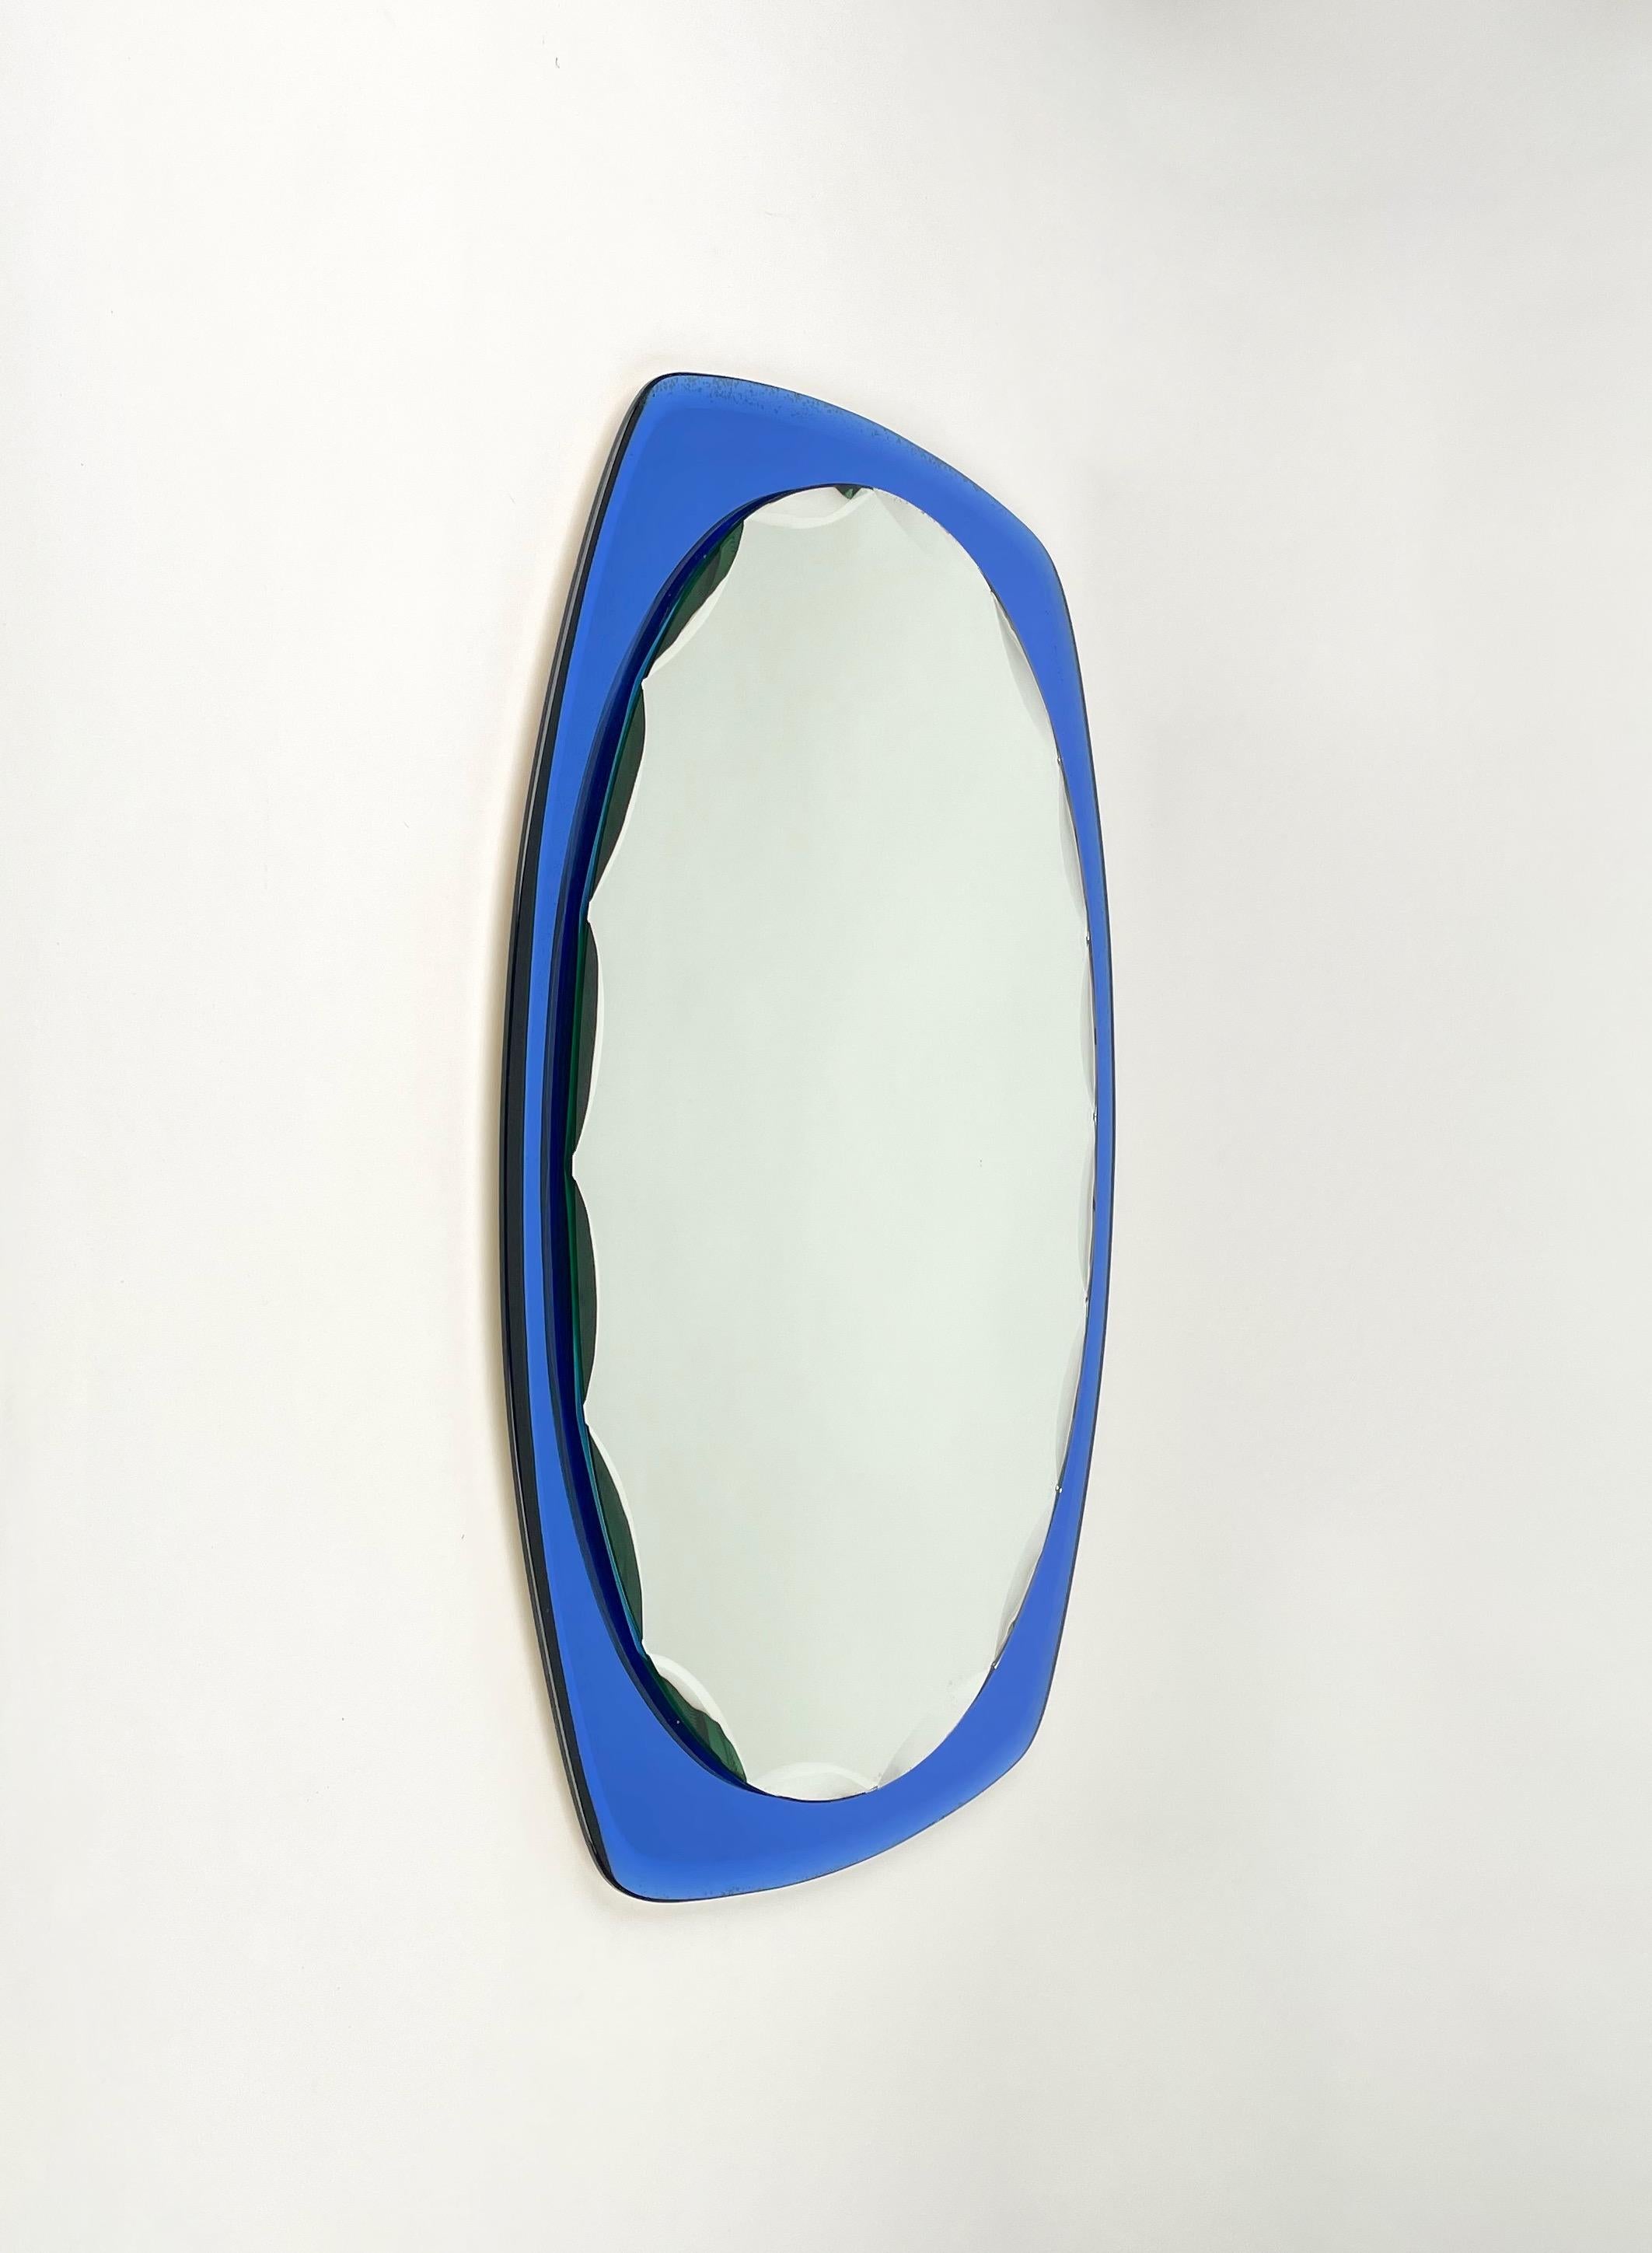 Ovaler Wandspiegel mit blauem Rahmen, der der italienischen Marke Cristal Art zugeschrieben wird, 1960er Jahre.

In seinem essentiellen und reinen Mid-Century-Design und seinen Linien bietet dieses wunderbare Stück einen geschnitzten ovalen